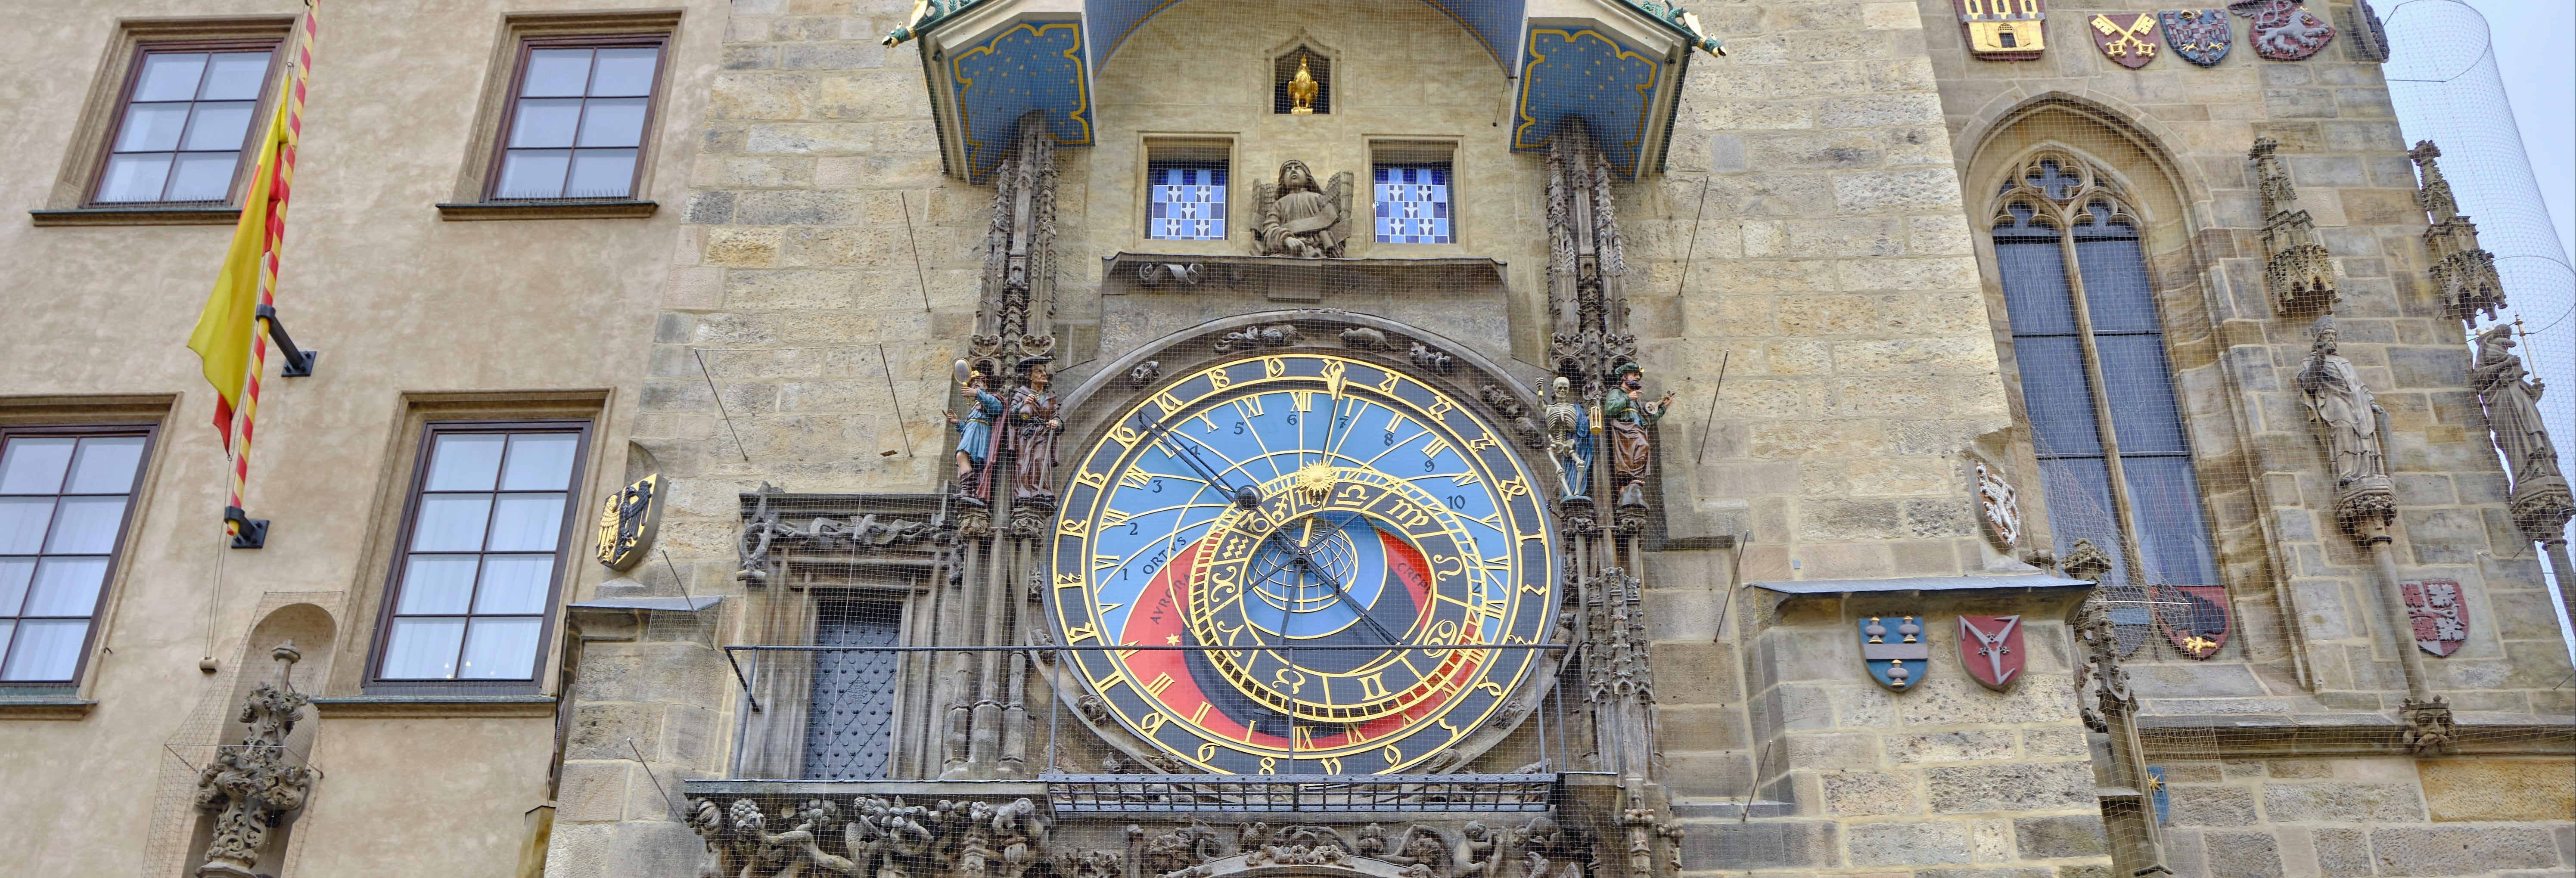 Ingresso do Relógio Astronômico de Praga